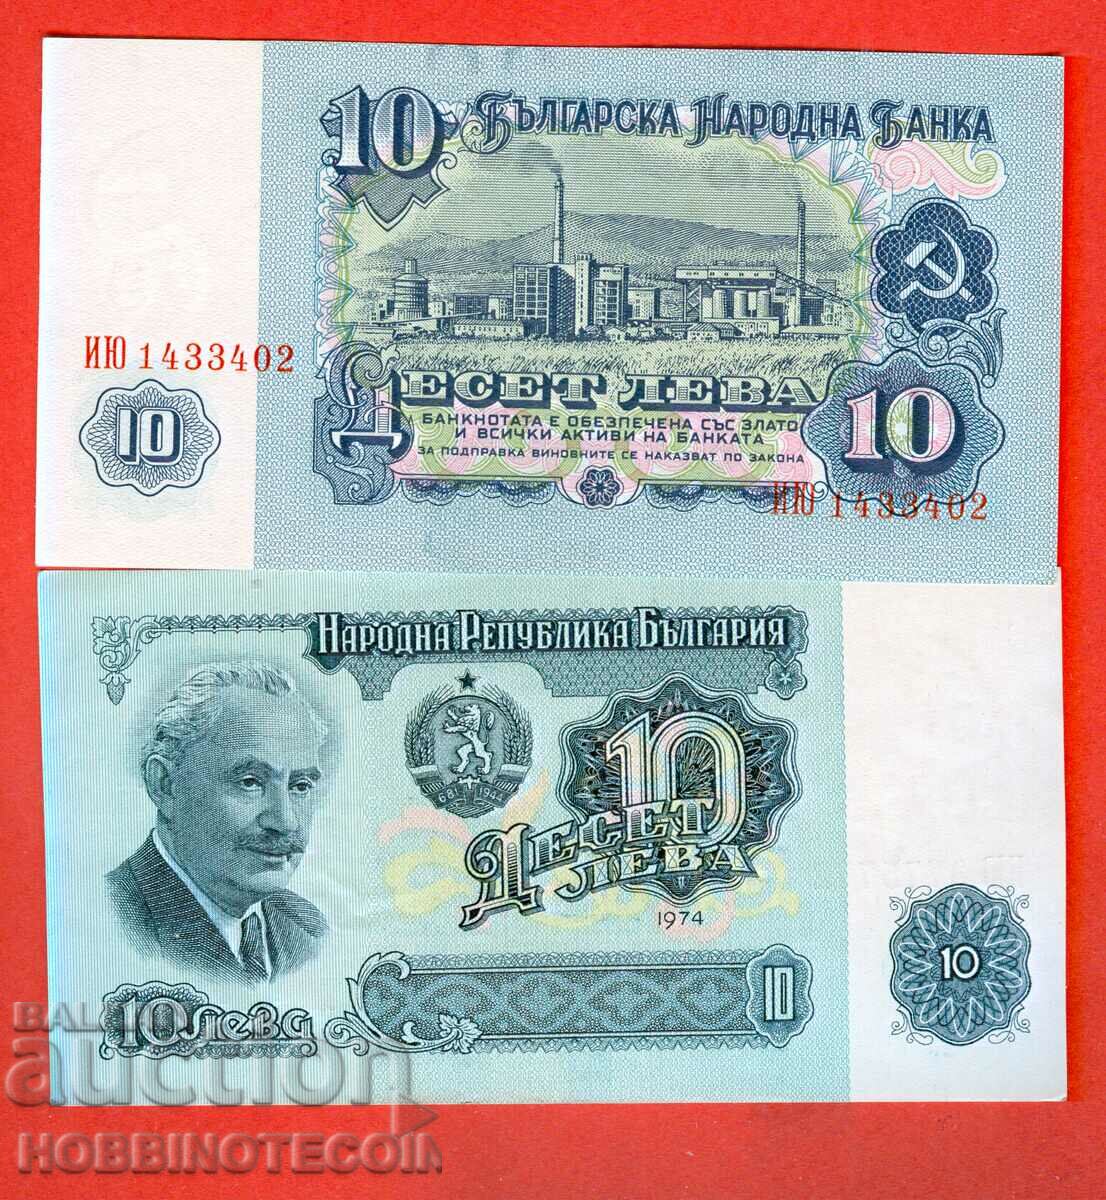 БЪЛГАРИЯ BULGARIA 10 Лева - 7 цифрен № серия ИЮ - 1974 UNC